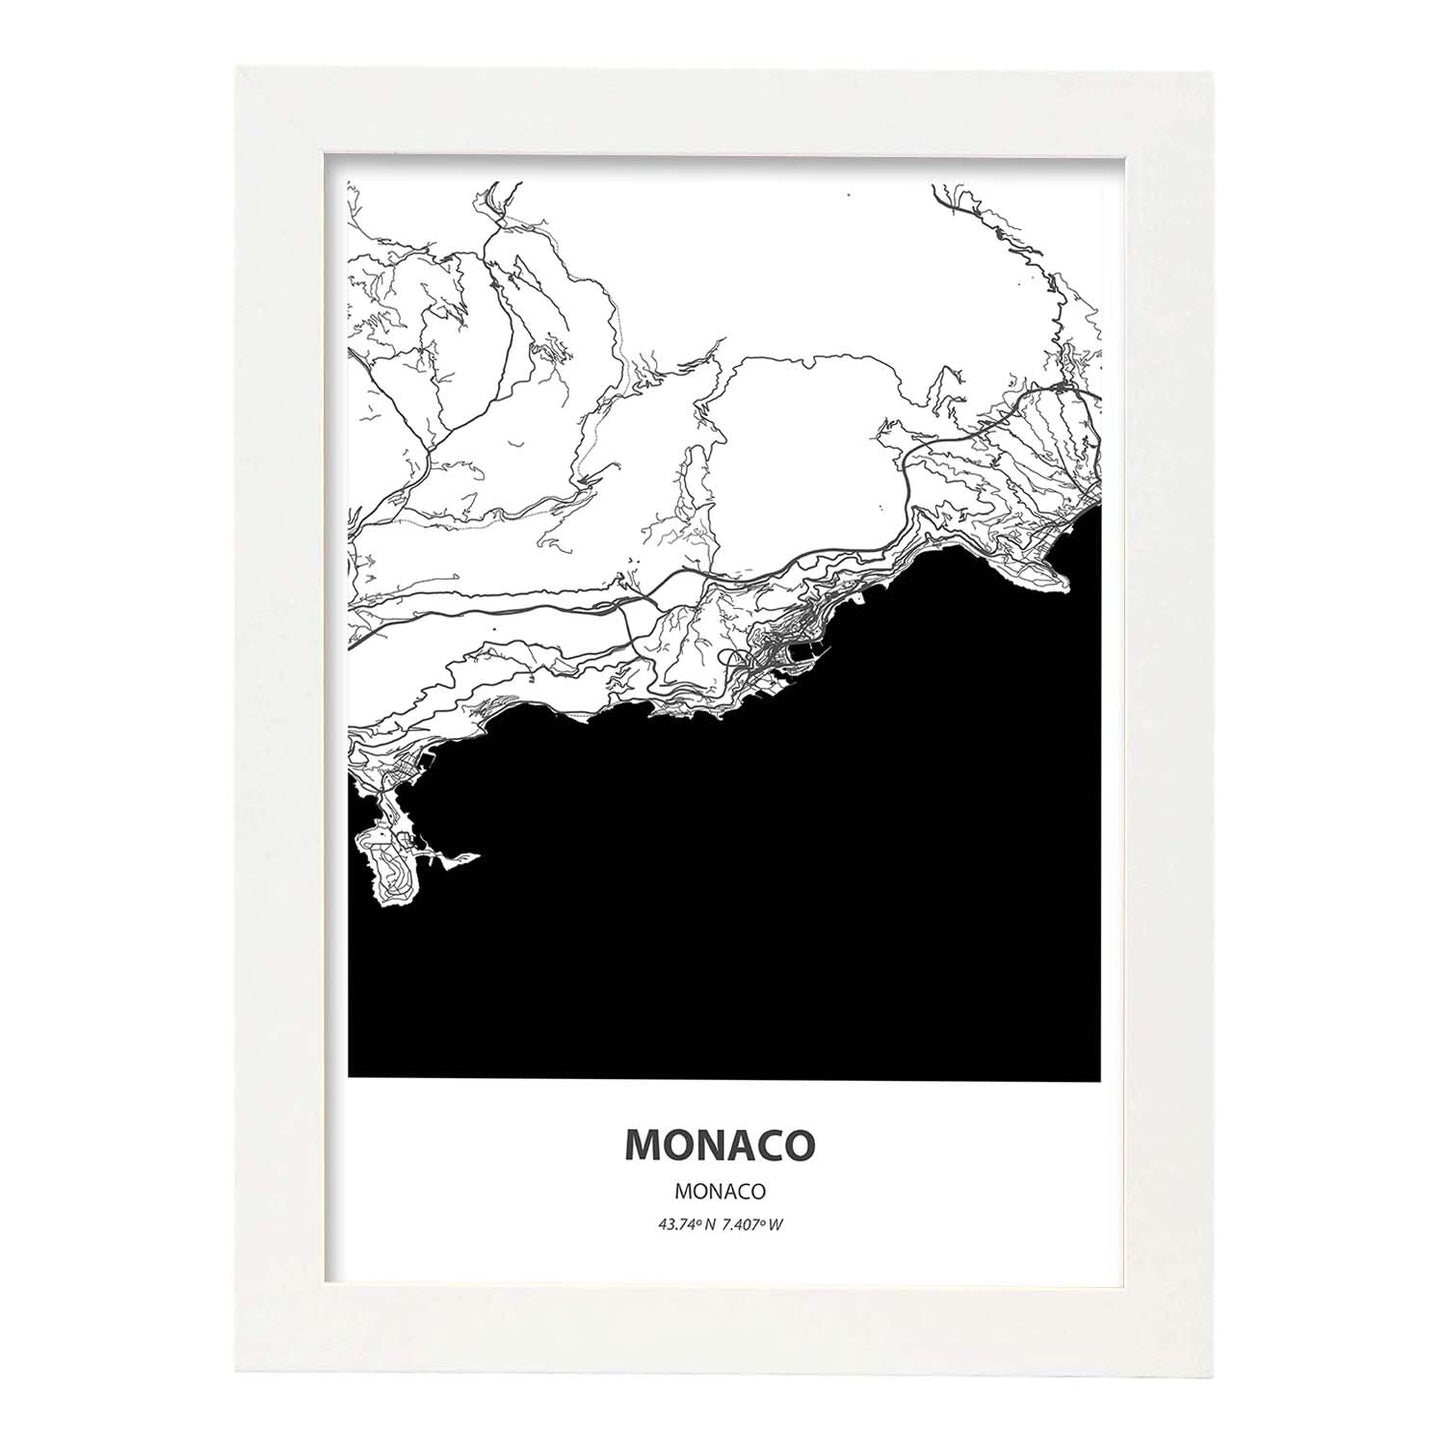 Poster con mapa de Monaco - Monaco. Láminas de ciudades de Europa con mares y ríos en color negro.-Artwork-Nacnic-A3-Marco Blanco-Nacnic Estudio SL